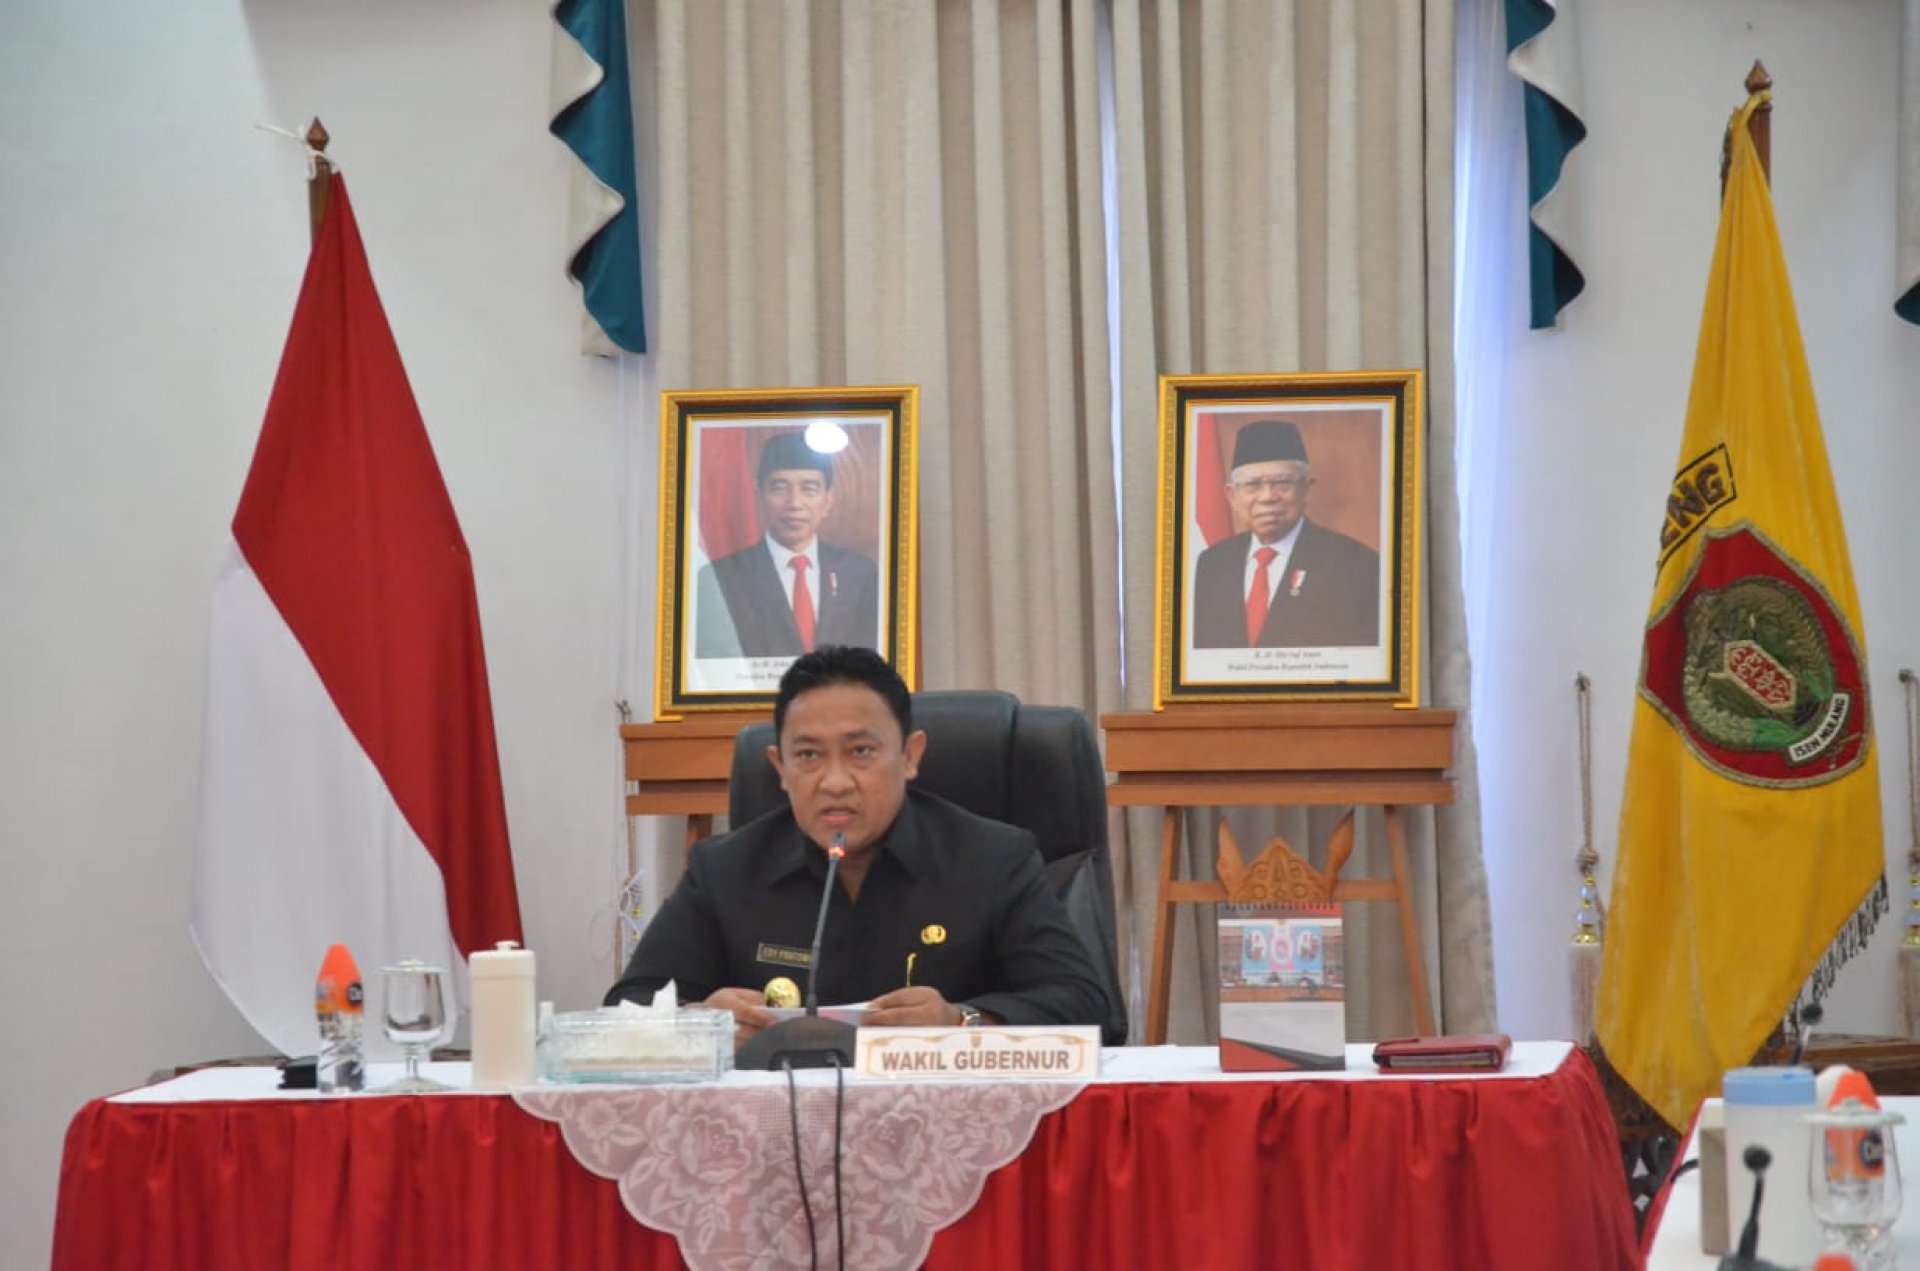 Gubernur Apresiasi Dukungan dan Kerja Sama DPRD Kalteng dalam Pelaksanaan APBD